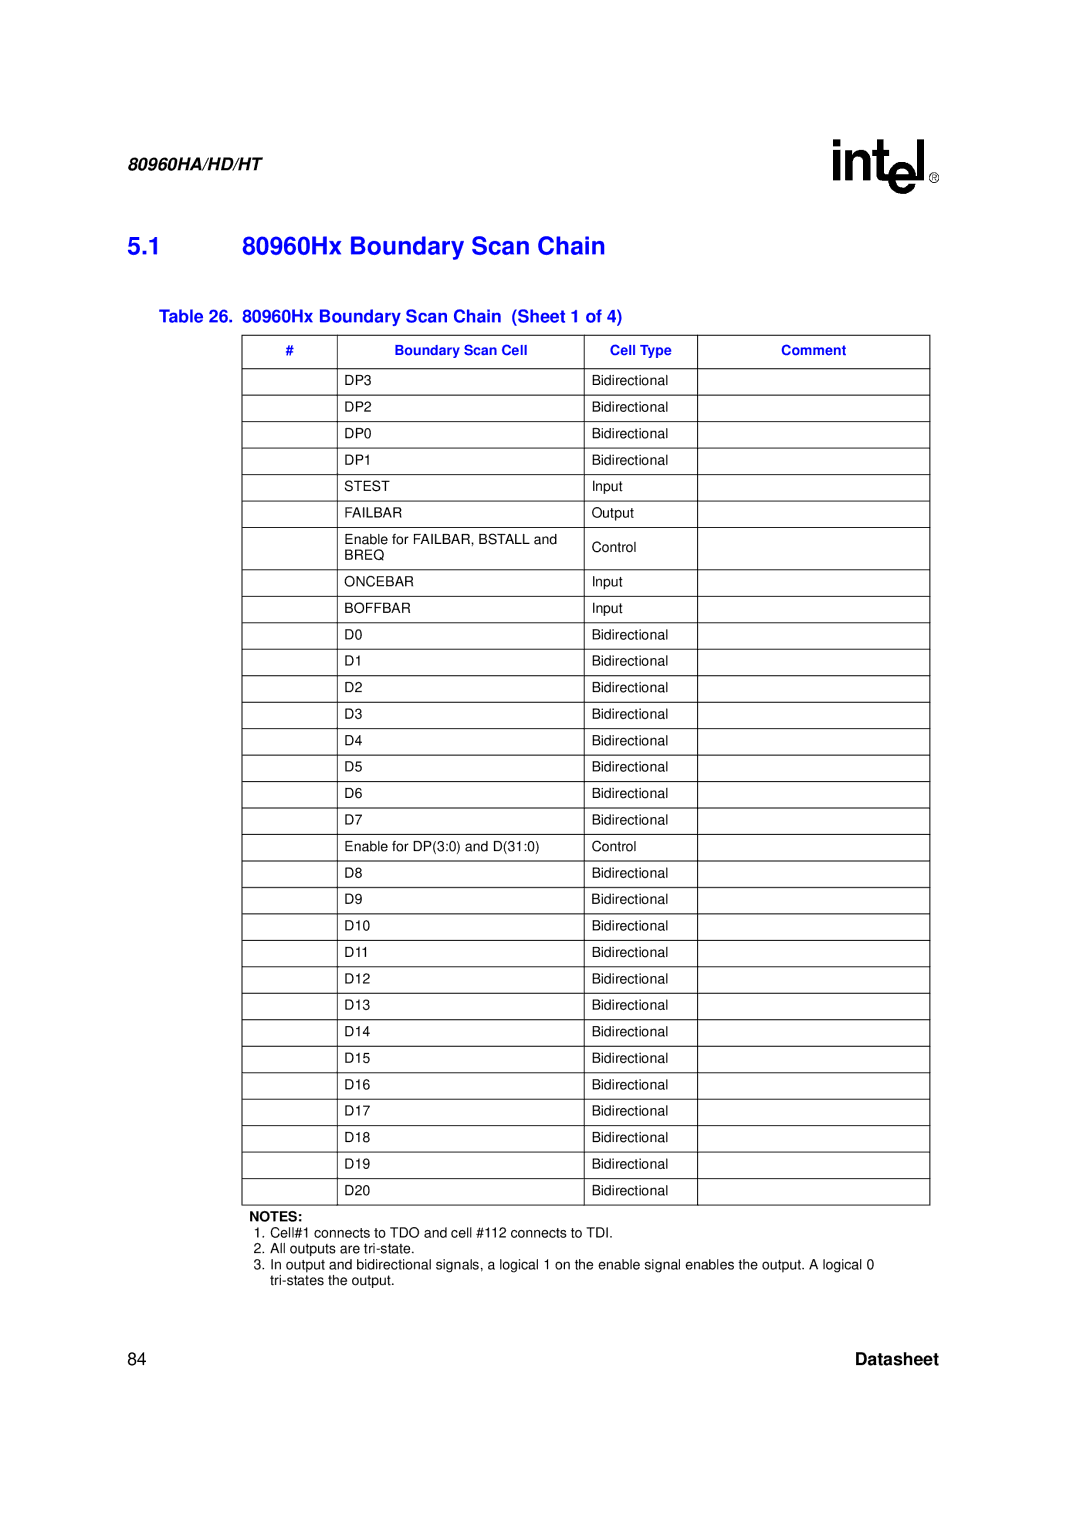 Intel 80960HD, 80960HT 80960Hx Boundary Scan Chain, Hx Boundary Scan Chain Sheet 1, Boundary Scan Cell Cell Type Comment 